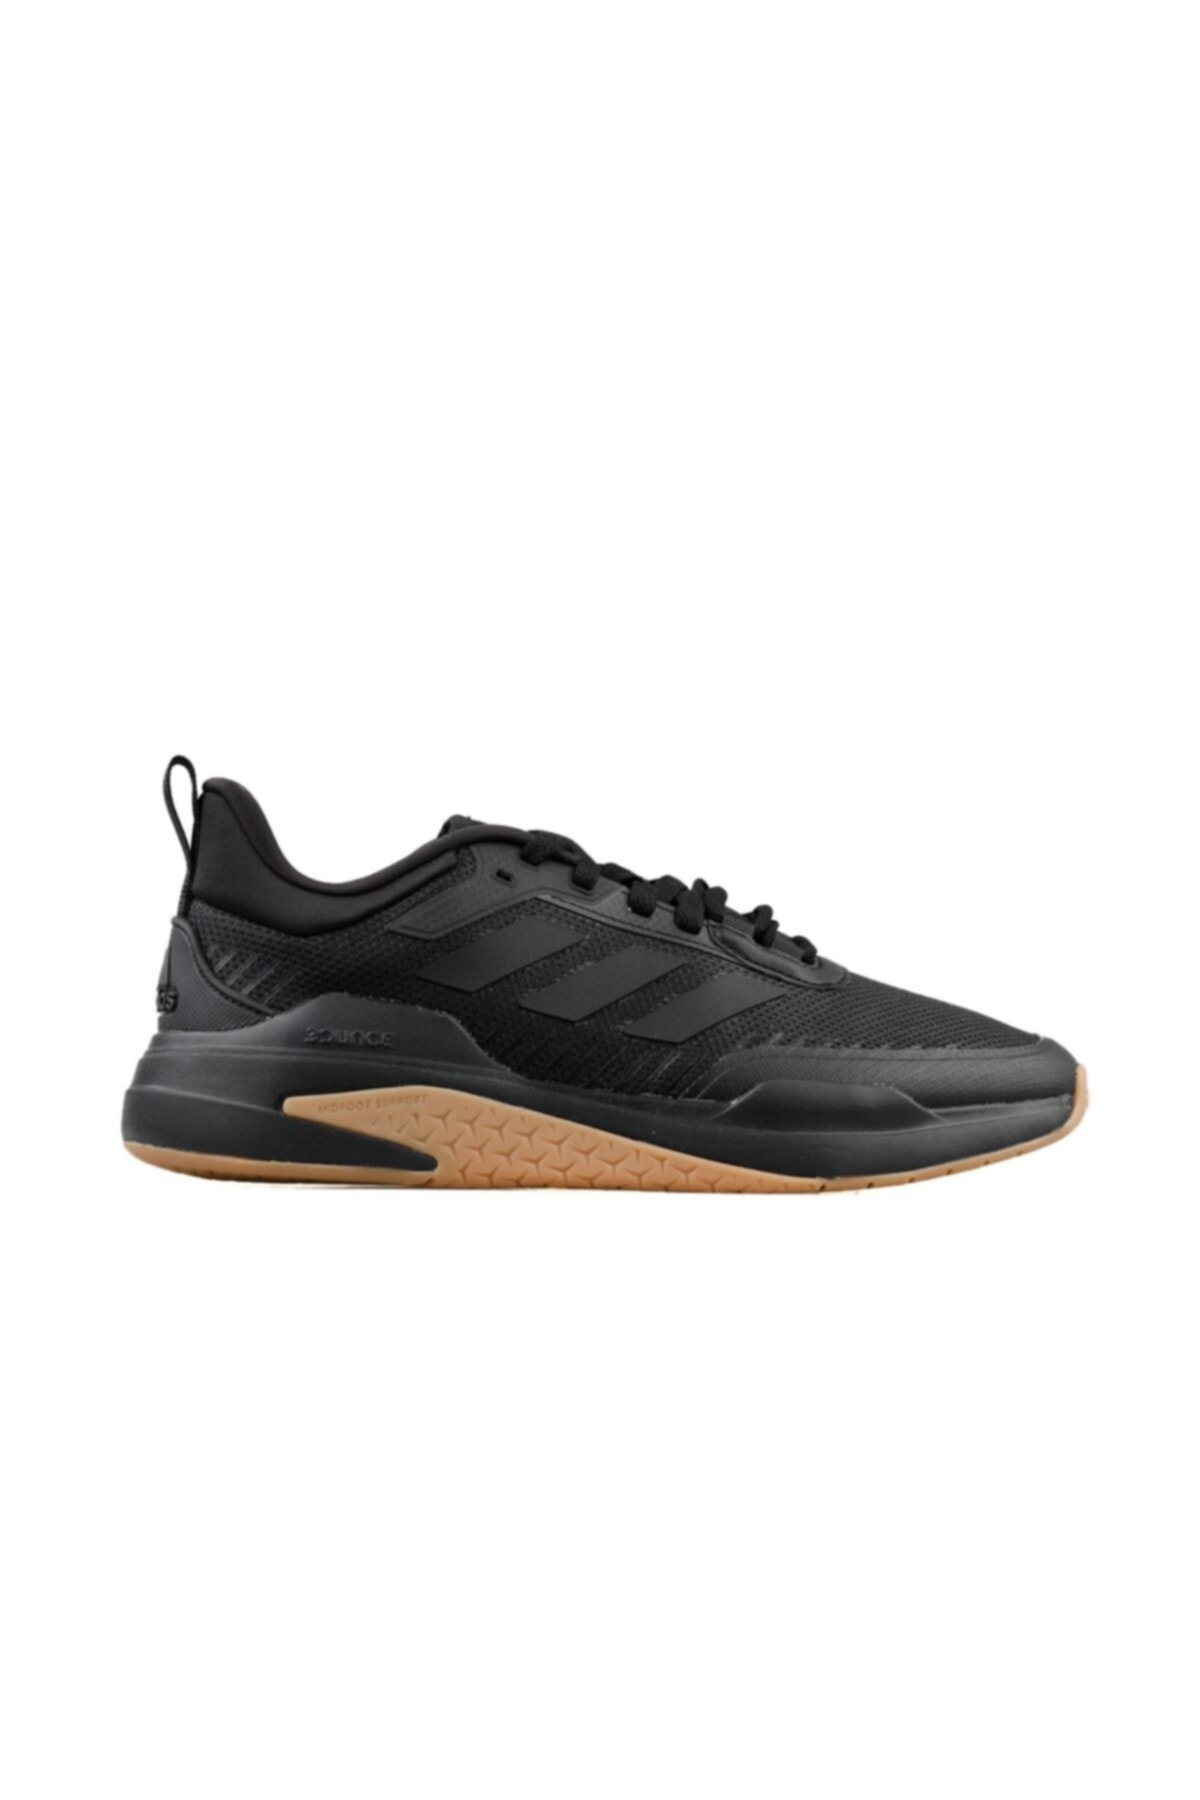 adidas Trainer V Erkek Koşu Ayakkabısı Gx0728 Siyah